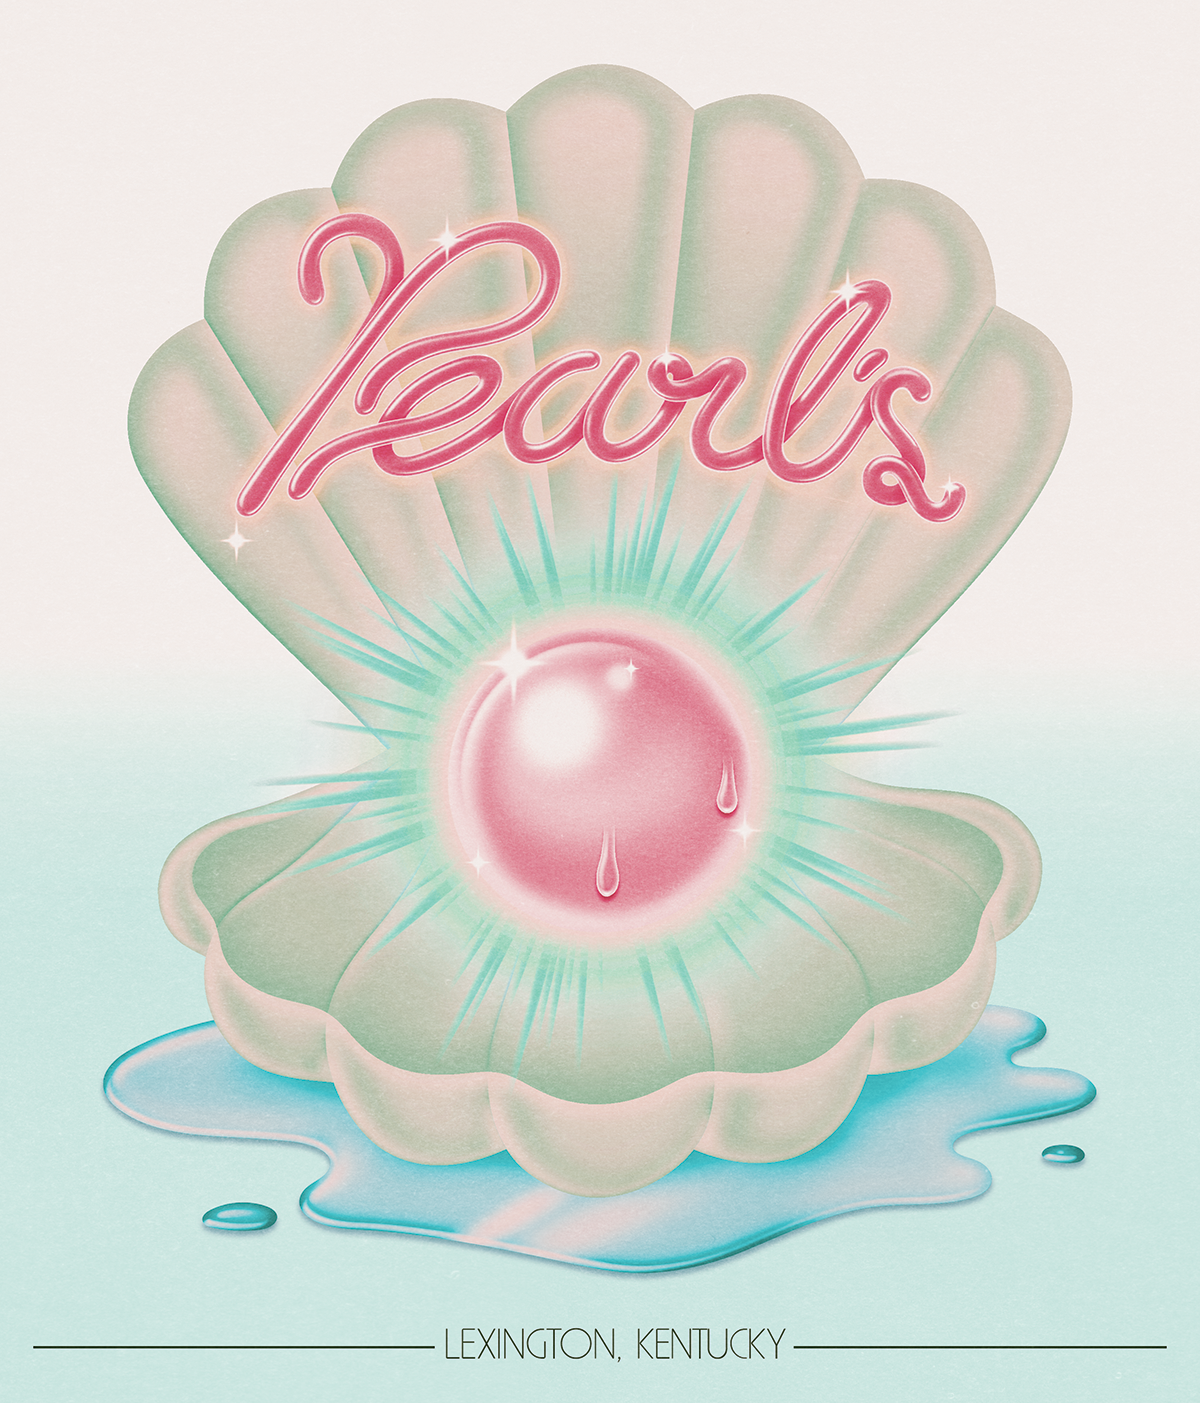 Pearl's lexington ky